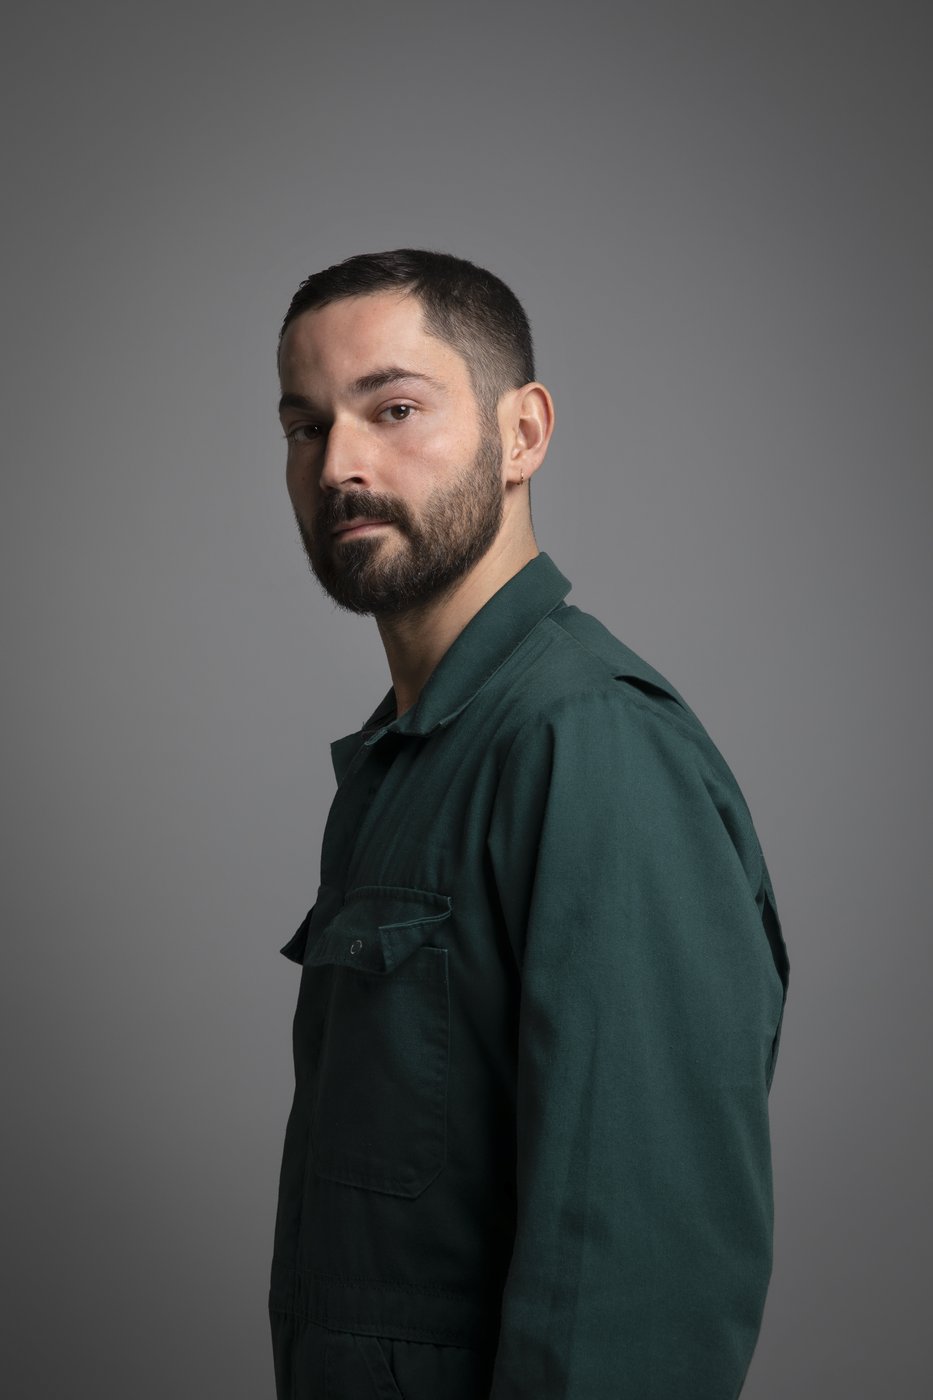 Der Künstler Aykan Safoğlu steht in einem grünen Hemd vor einem grauen Hintergrund.